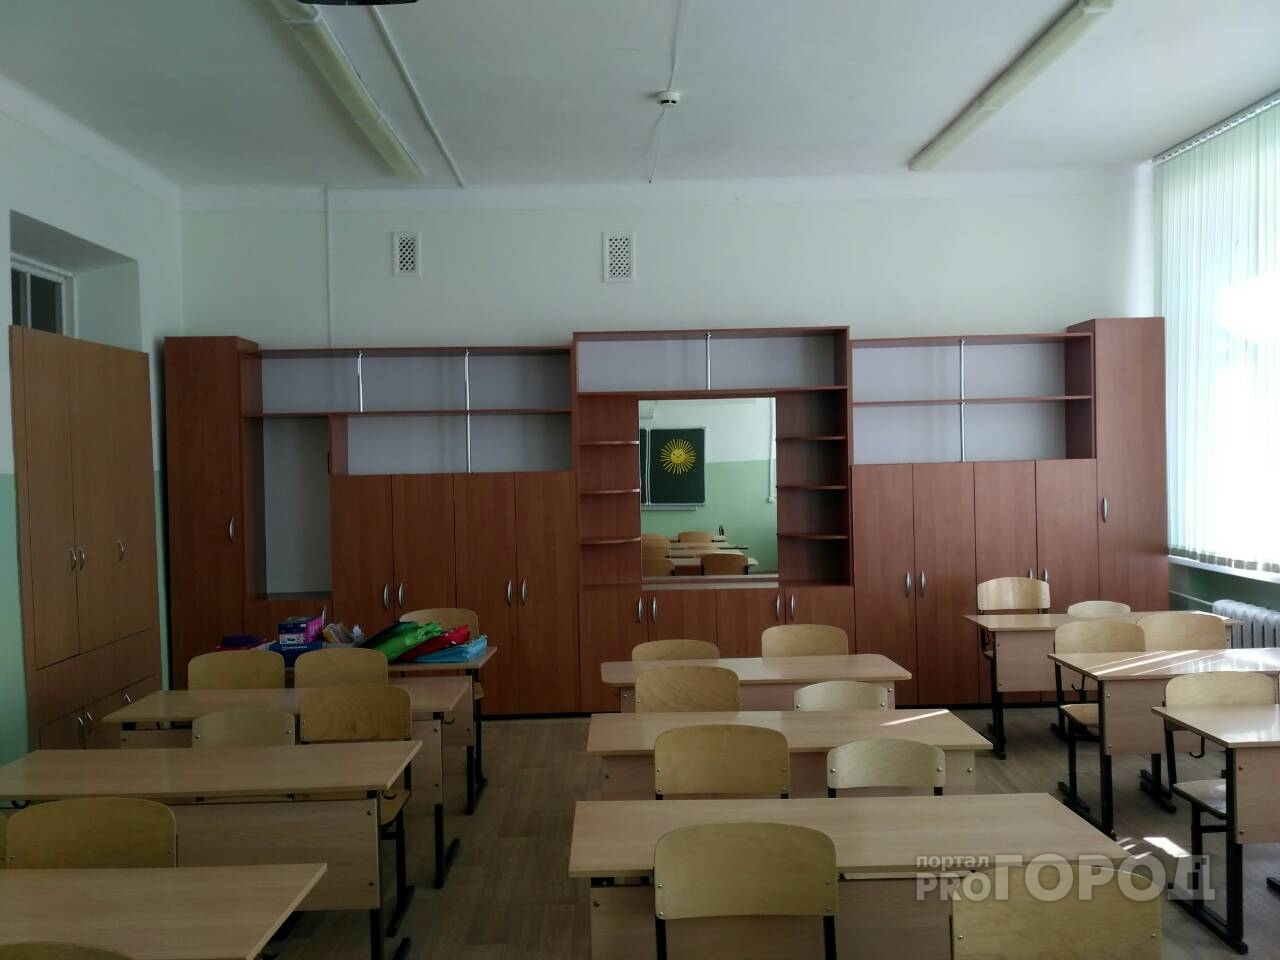 После публикации статьи чебоксарским второклассникам вернули их кабинет